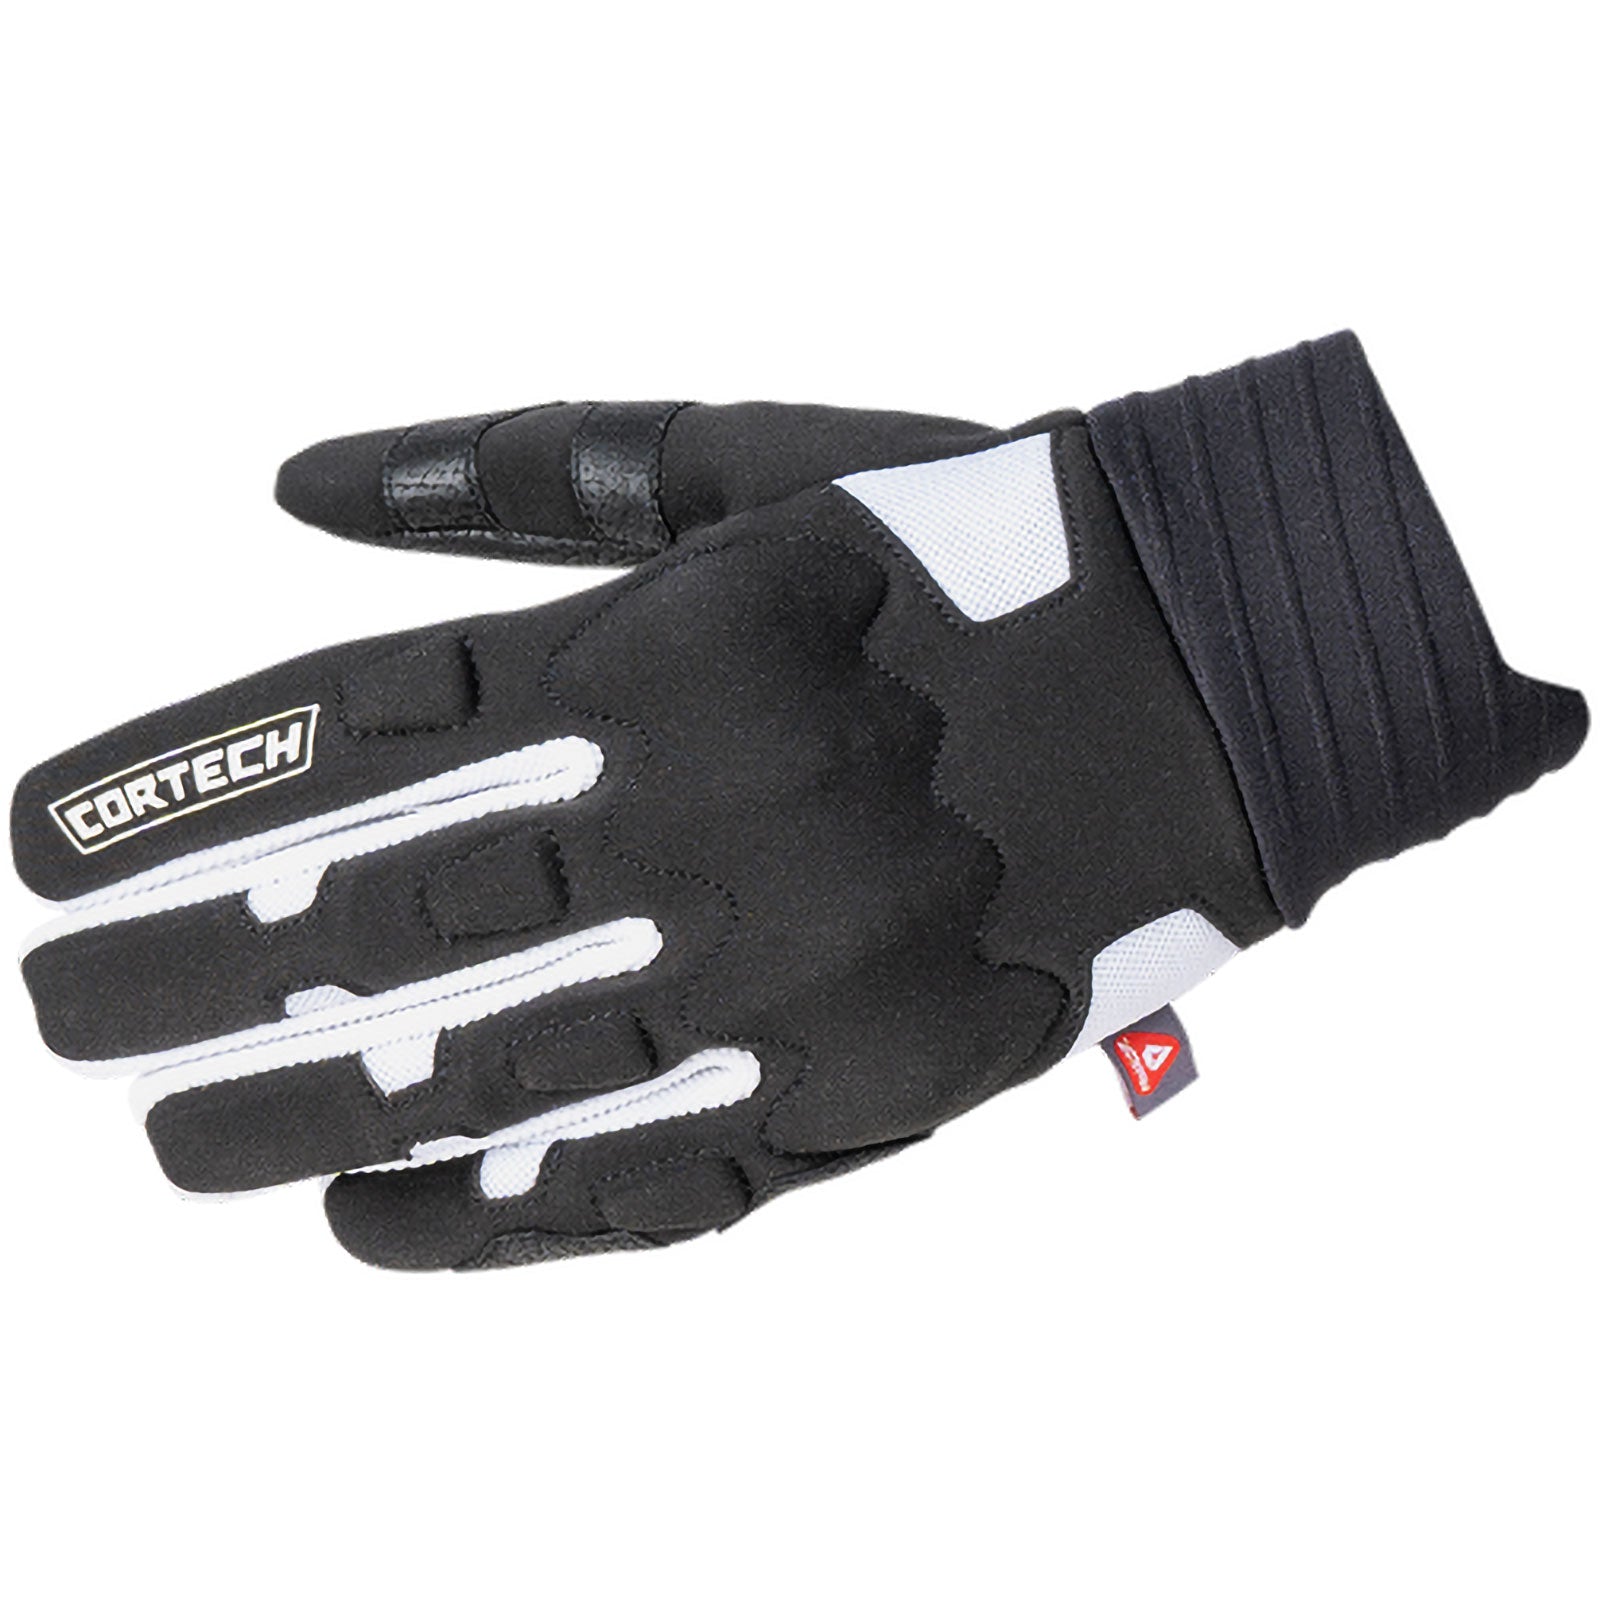 Cortech Insu-lite Men's Street Gloves-8395